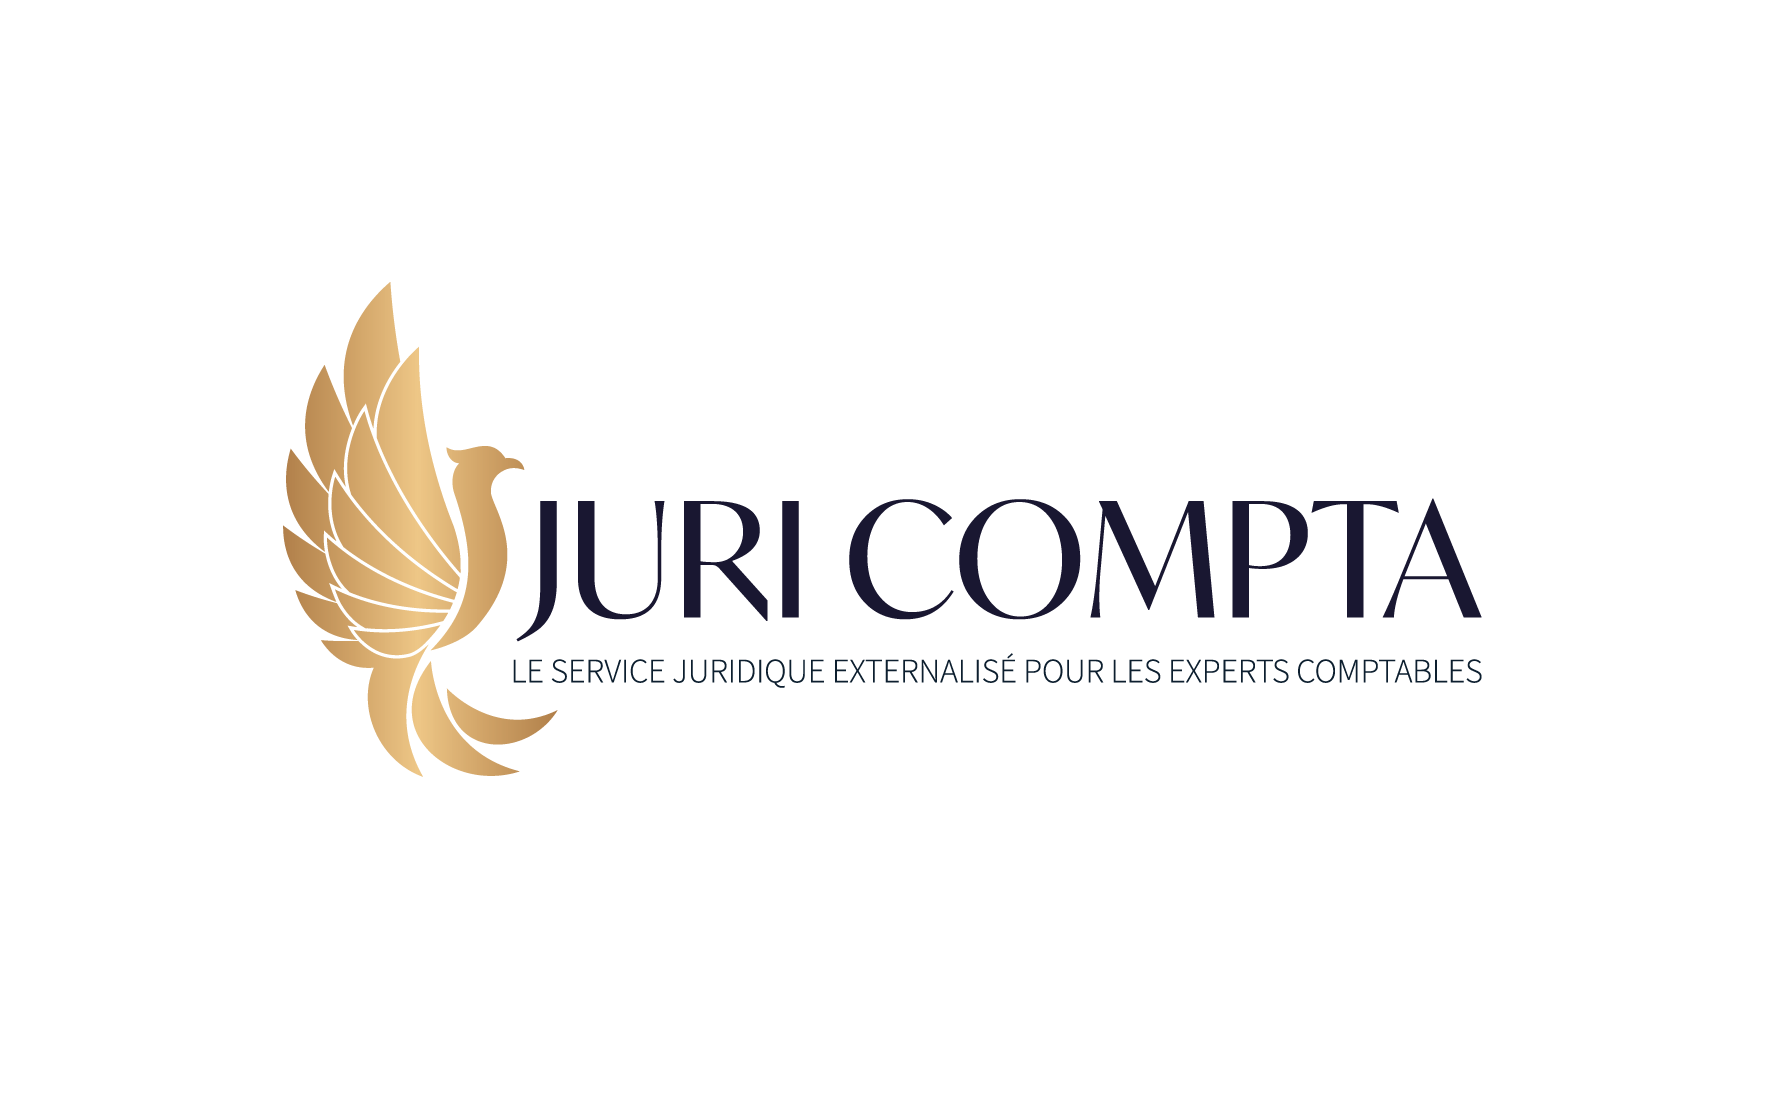 JURI COMPTA